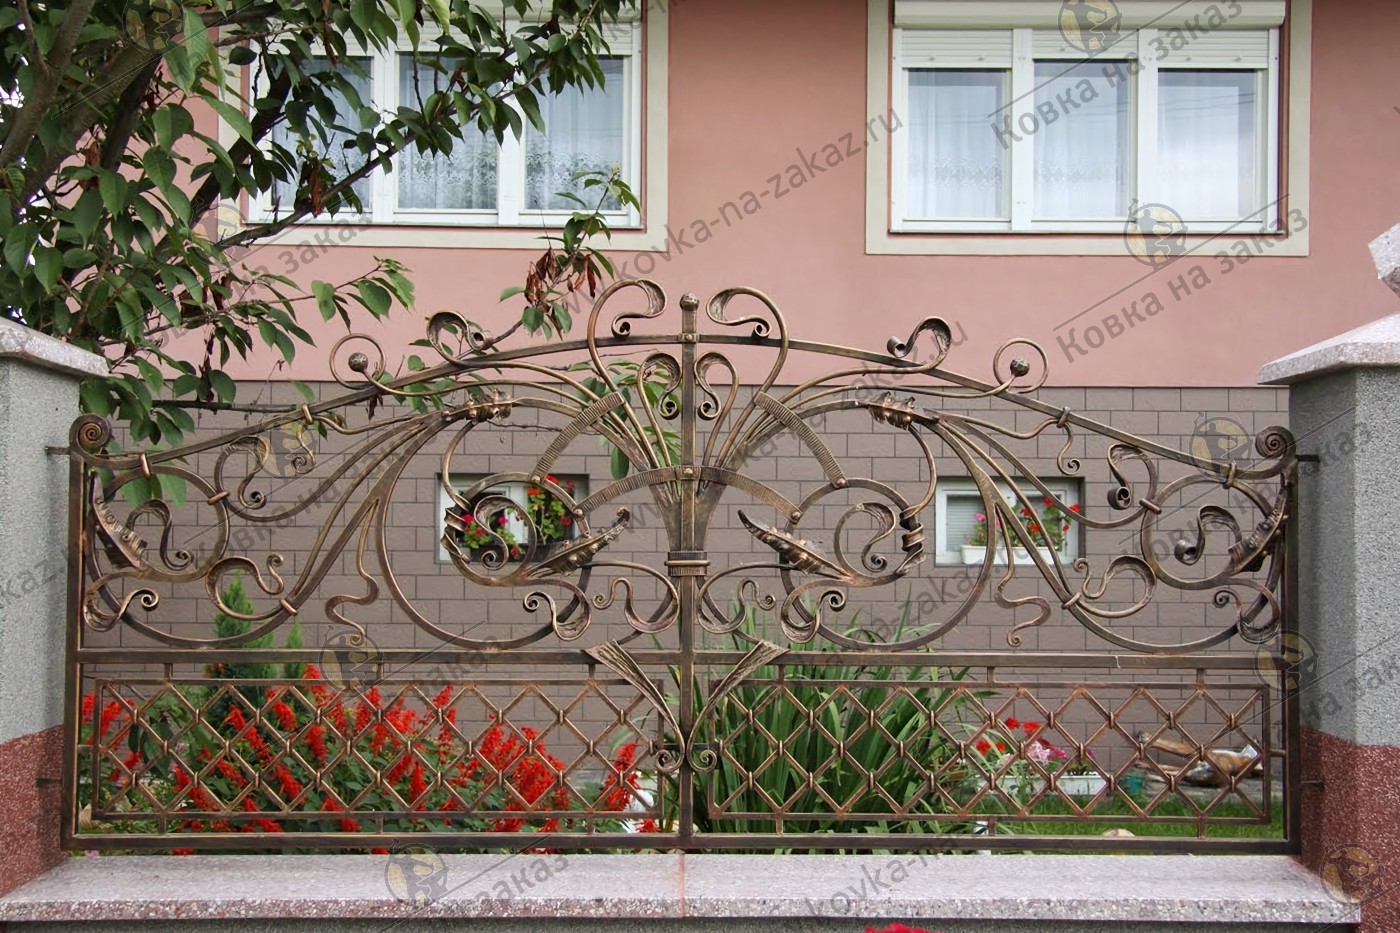 Кованый забор для дома, артикул 2470, фото 1